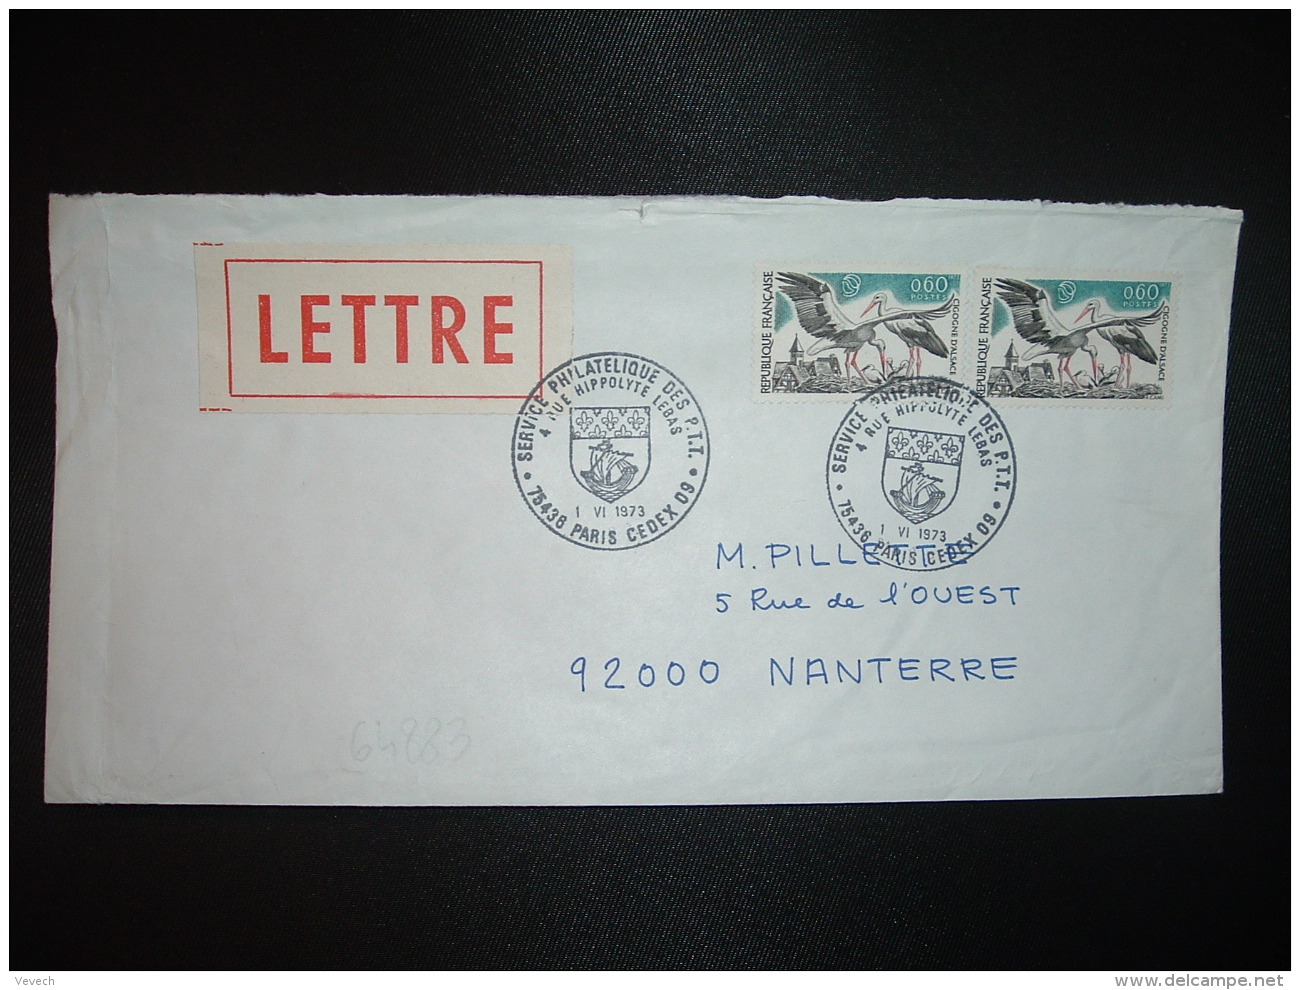 LETTRE TP CIGOGNE D'ALSACE 0,60 X2 OBL.1 VI 1973 PARIS CEDEX 09 SERVICE PHILATELIQUE DES PTT - Tarifs Postaux